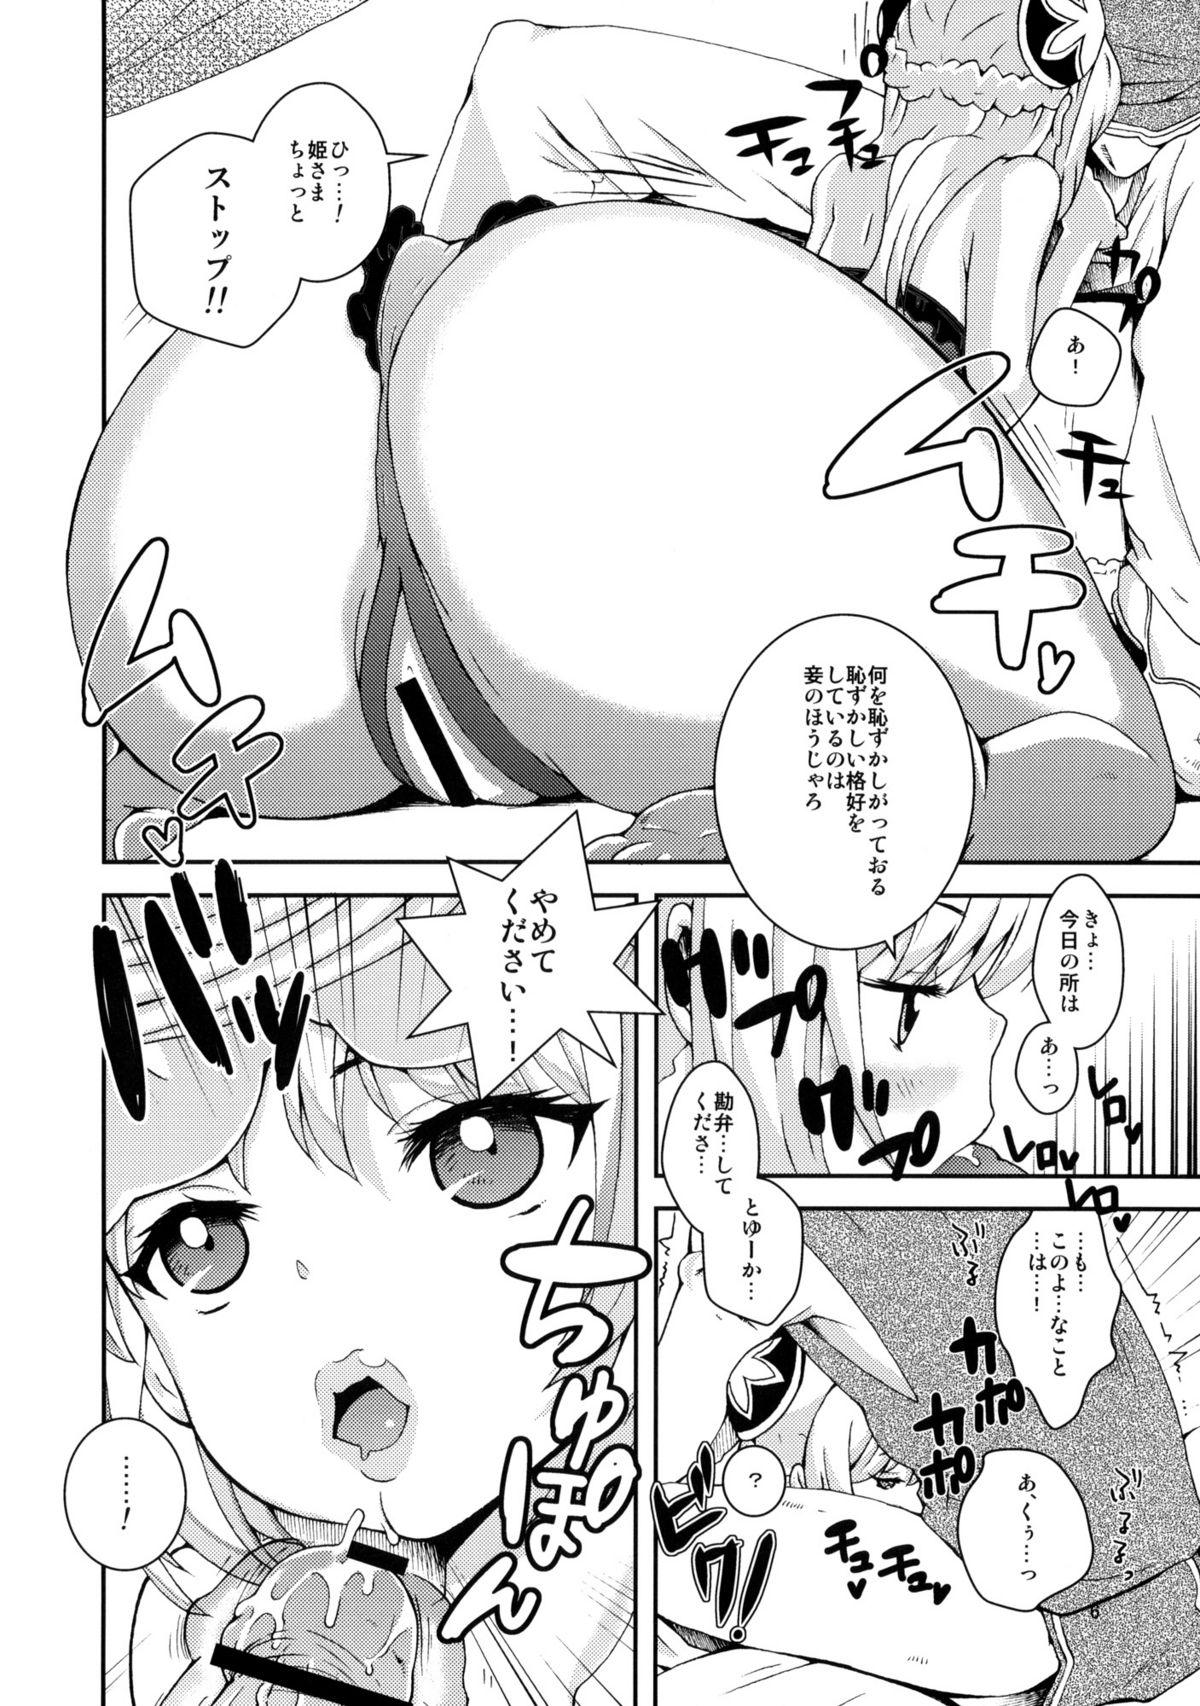 Omegle Hime-sama Shinkou 8 18 Year Old - Page 5